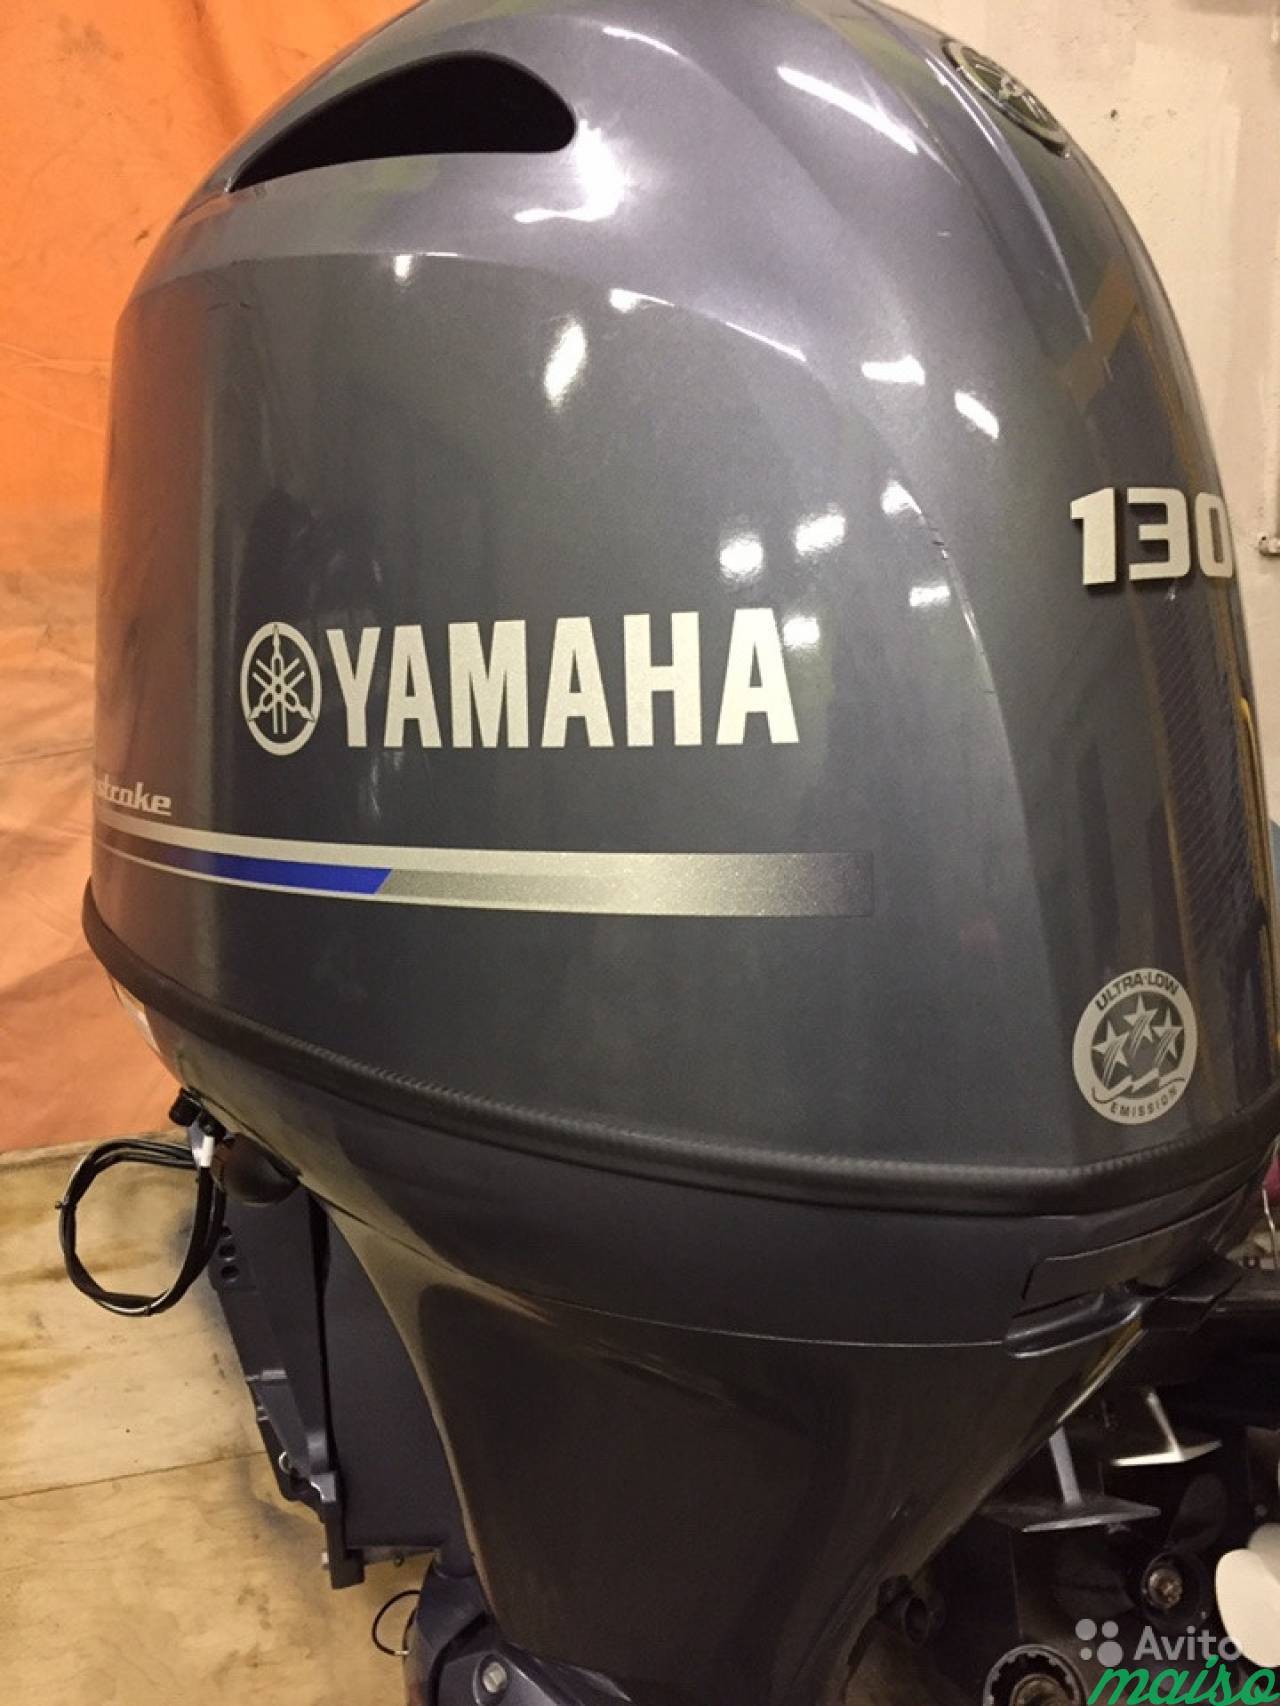 Лодочный мотор yamaha 130 в Санкт-Петербурге. Фото 2